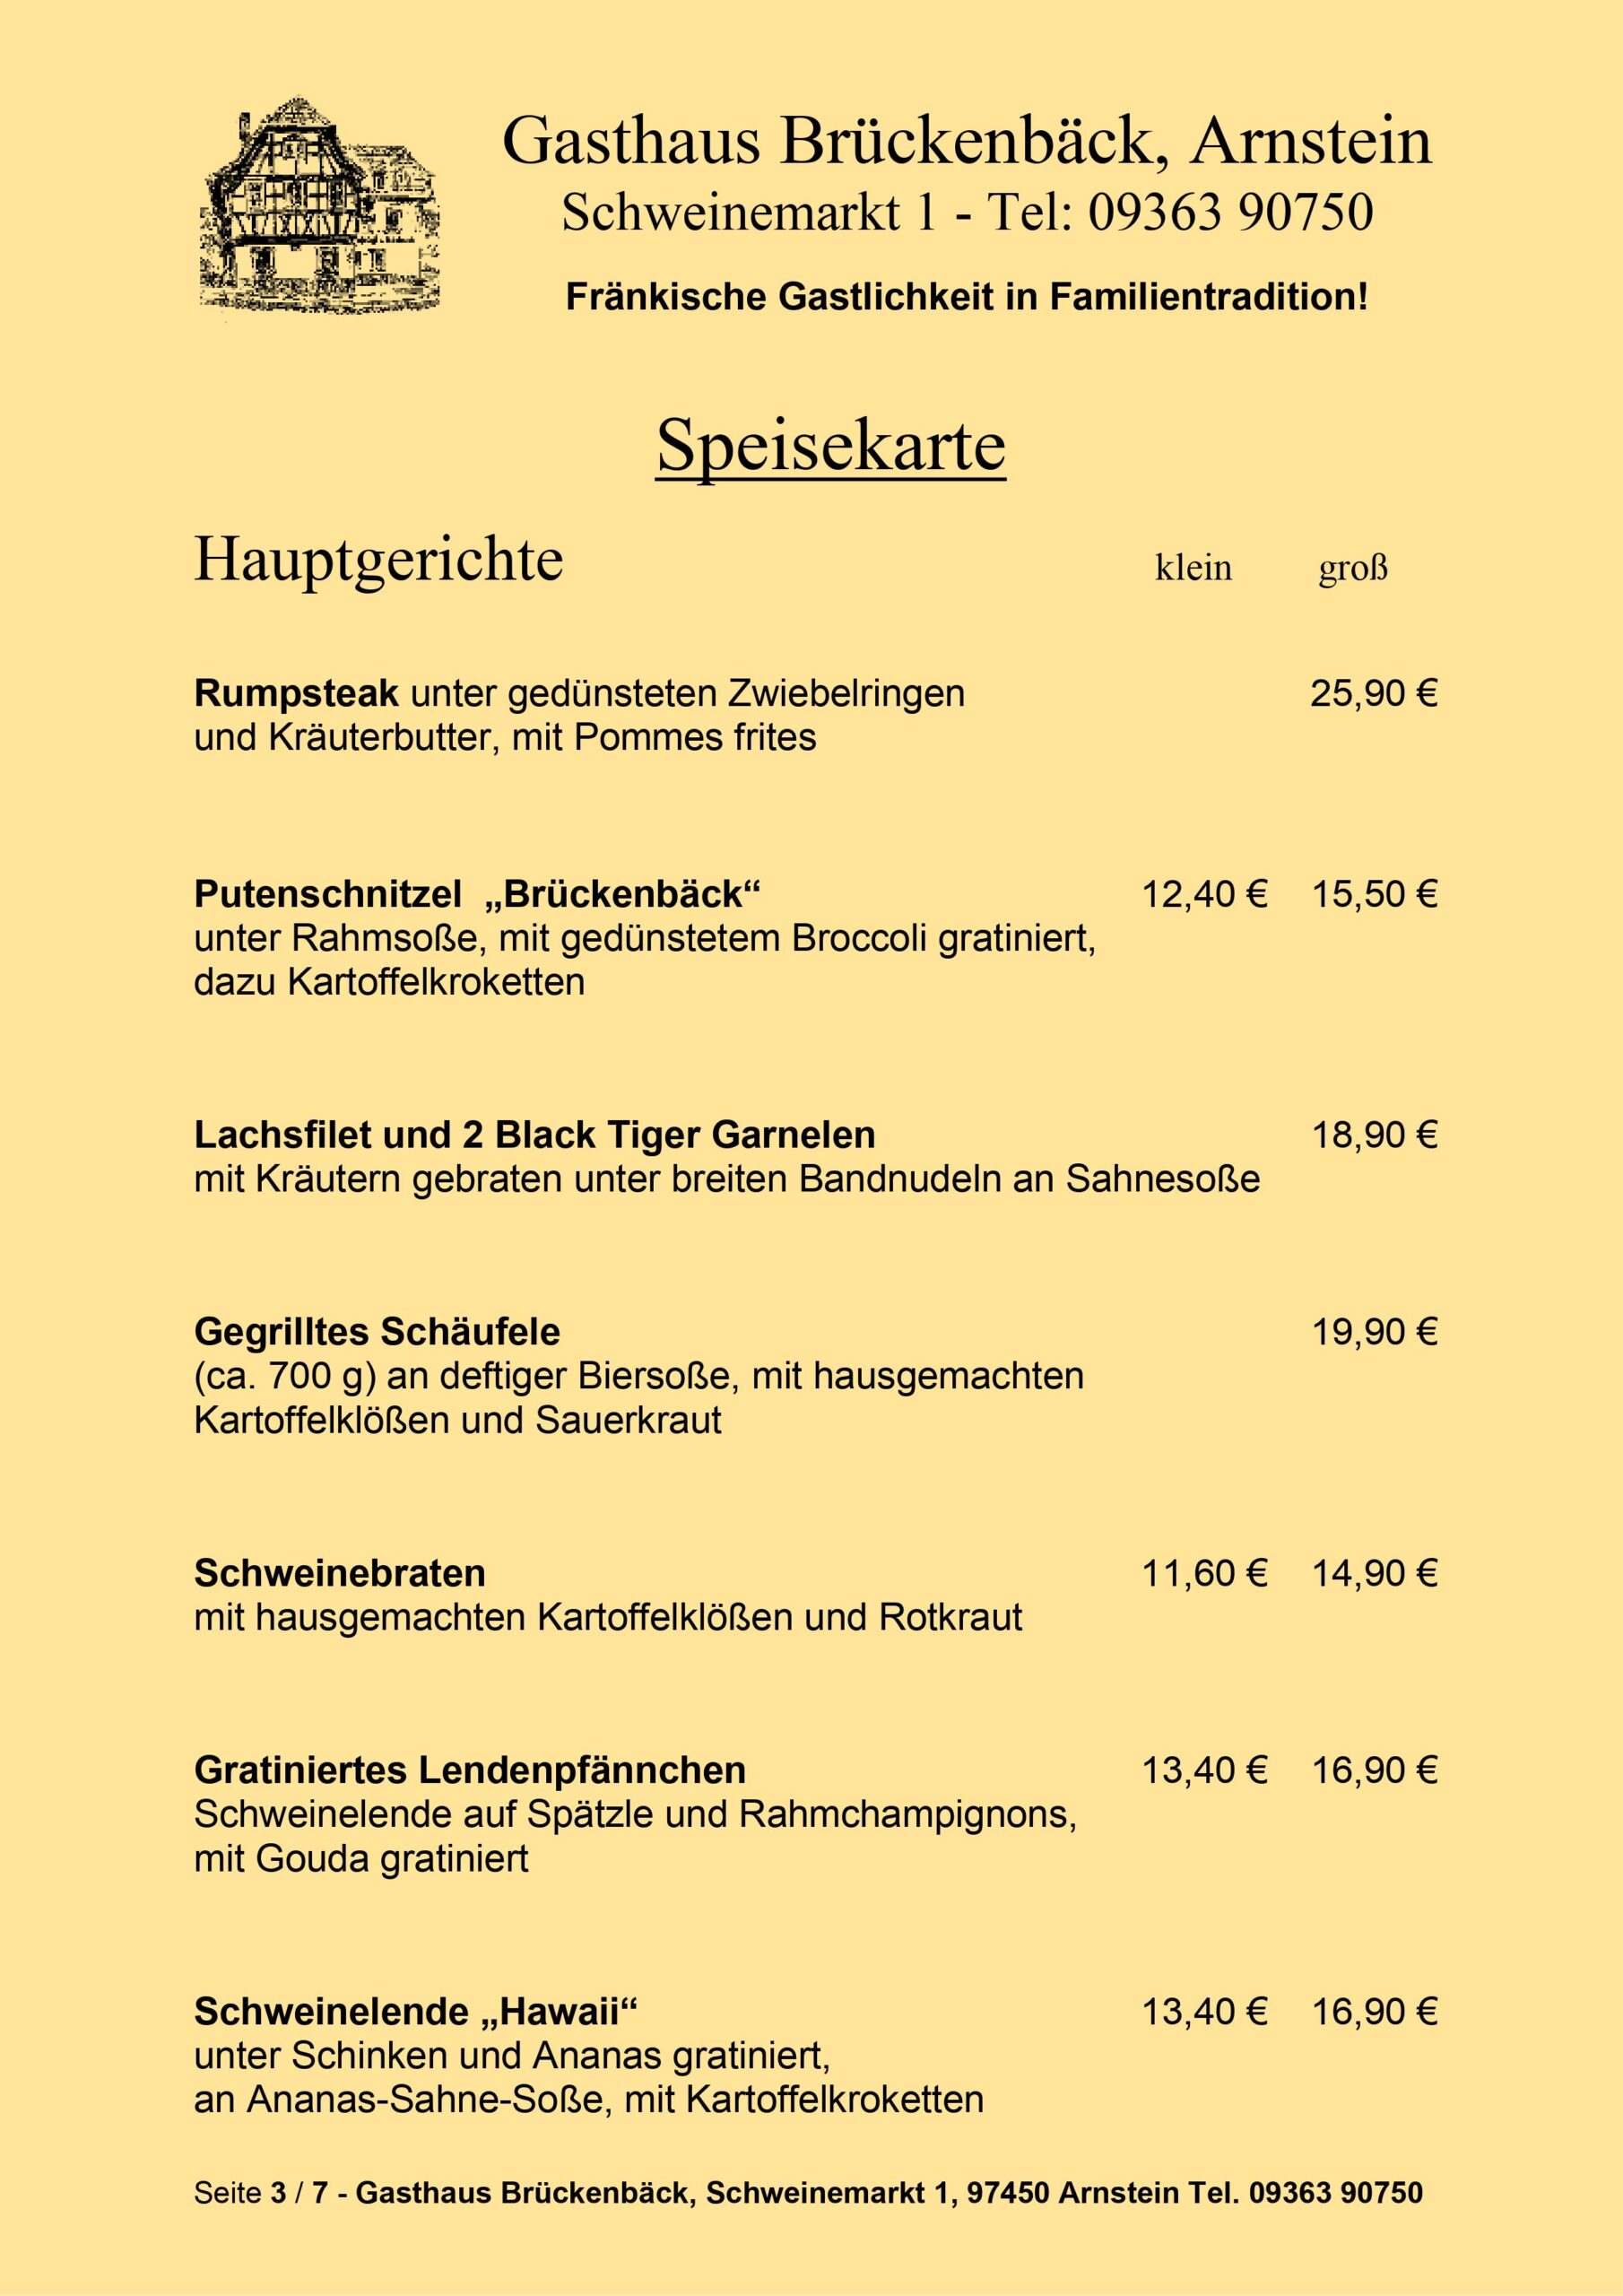 Gasthaus Brückenbäck - Speisekarte Seite 3/7